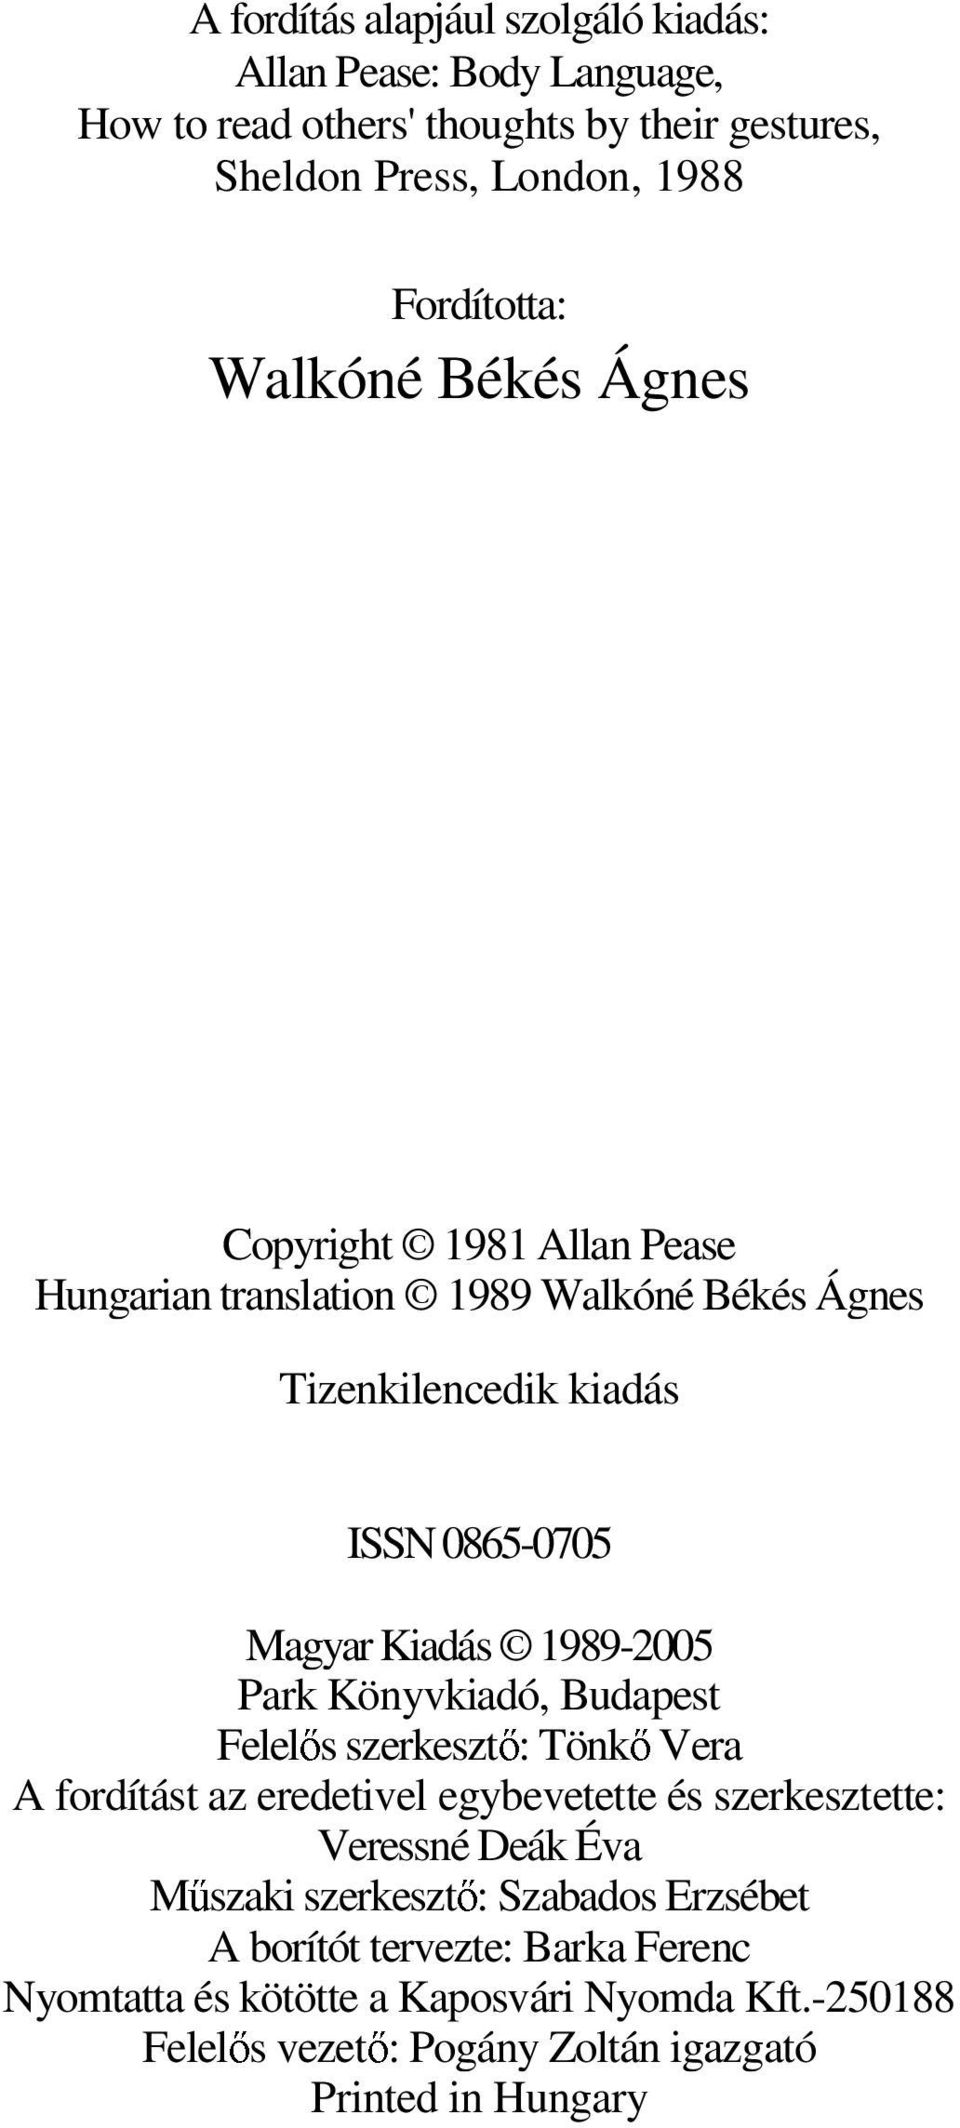 Park Könyvkiadó, Budapest Felelıs szerkesztı: Tönkı Vera A fordítást az eredetivel egybevetette és szerkesztette: Veressné Deák Éva Mőszaki szerkesztı: